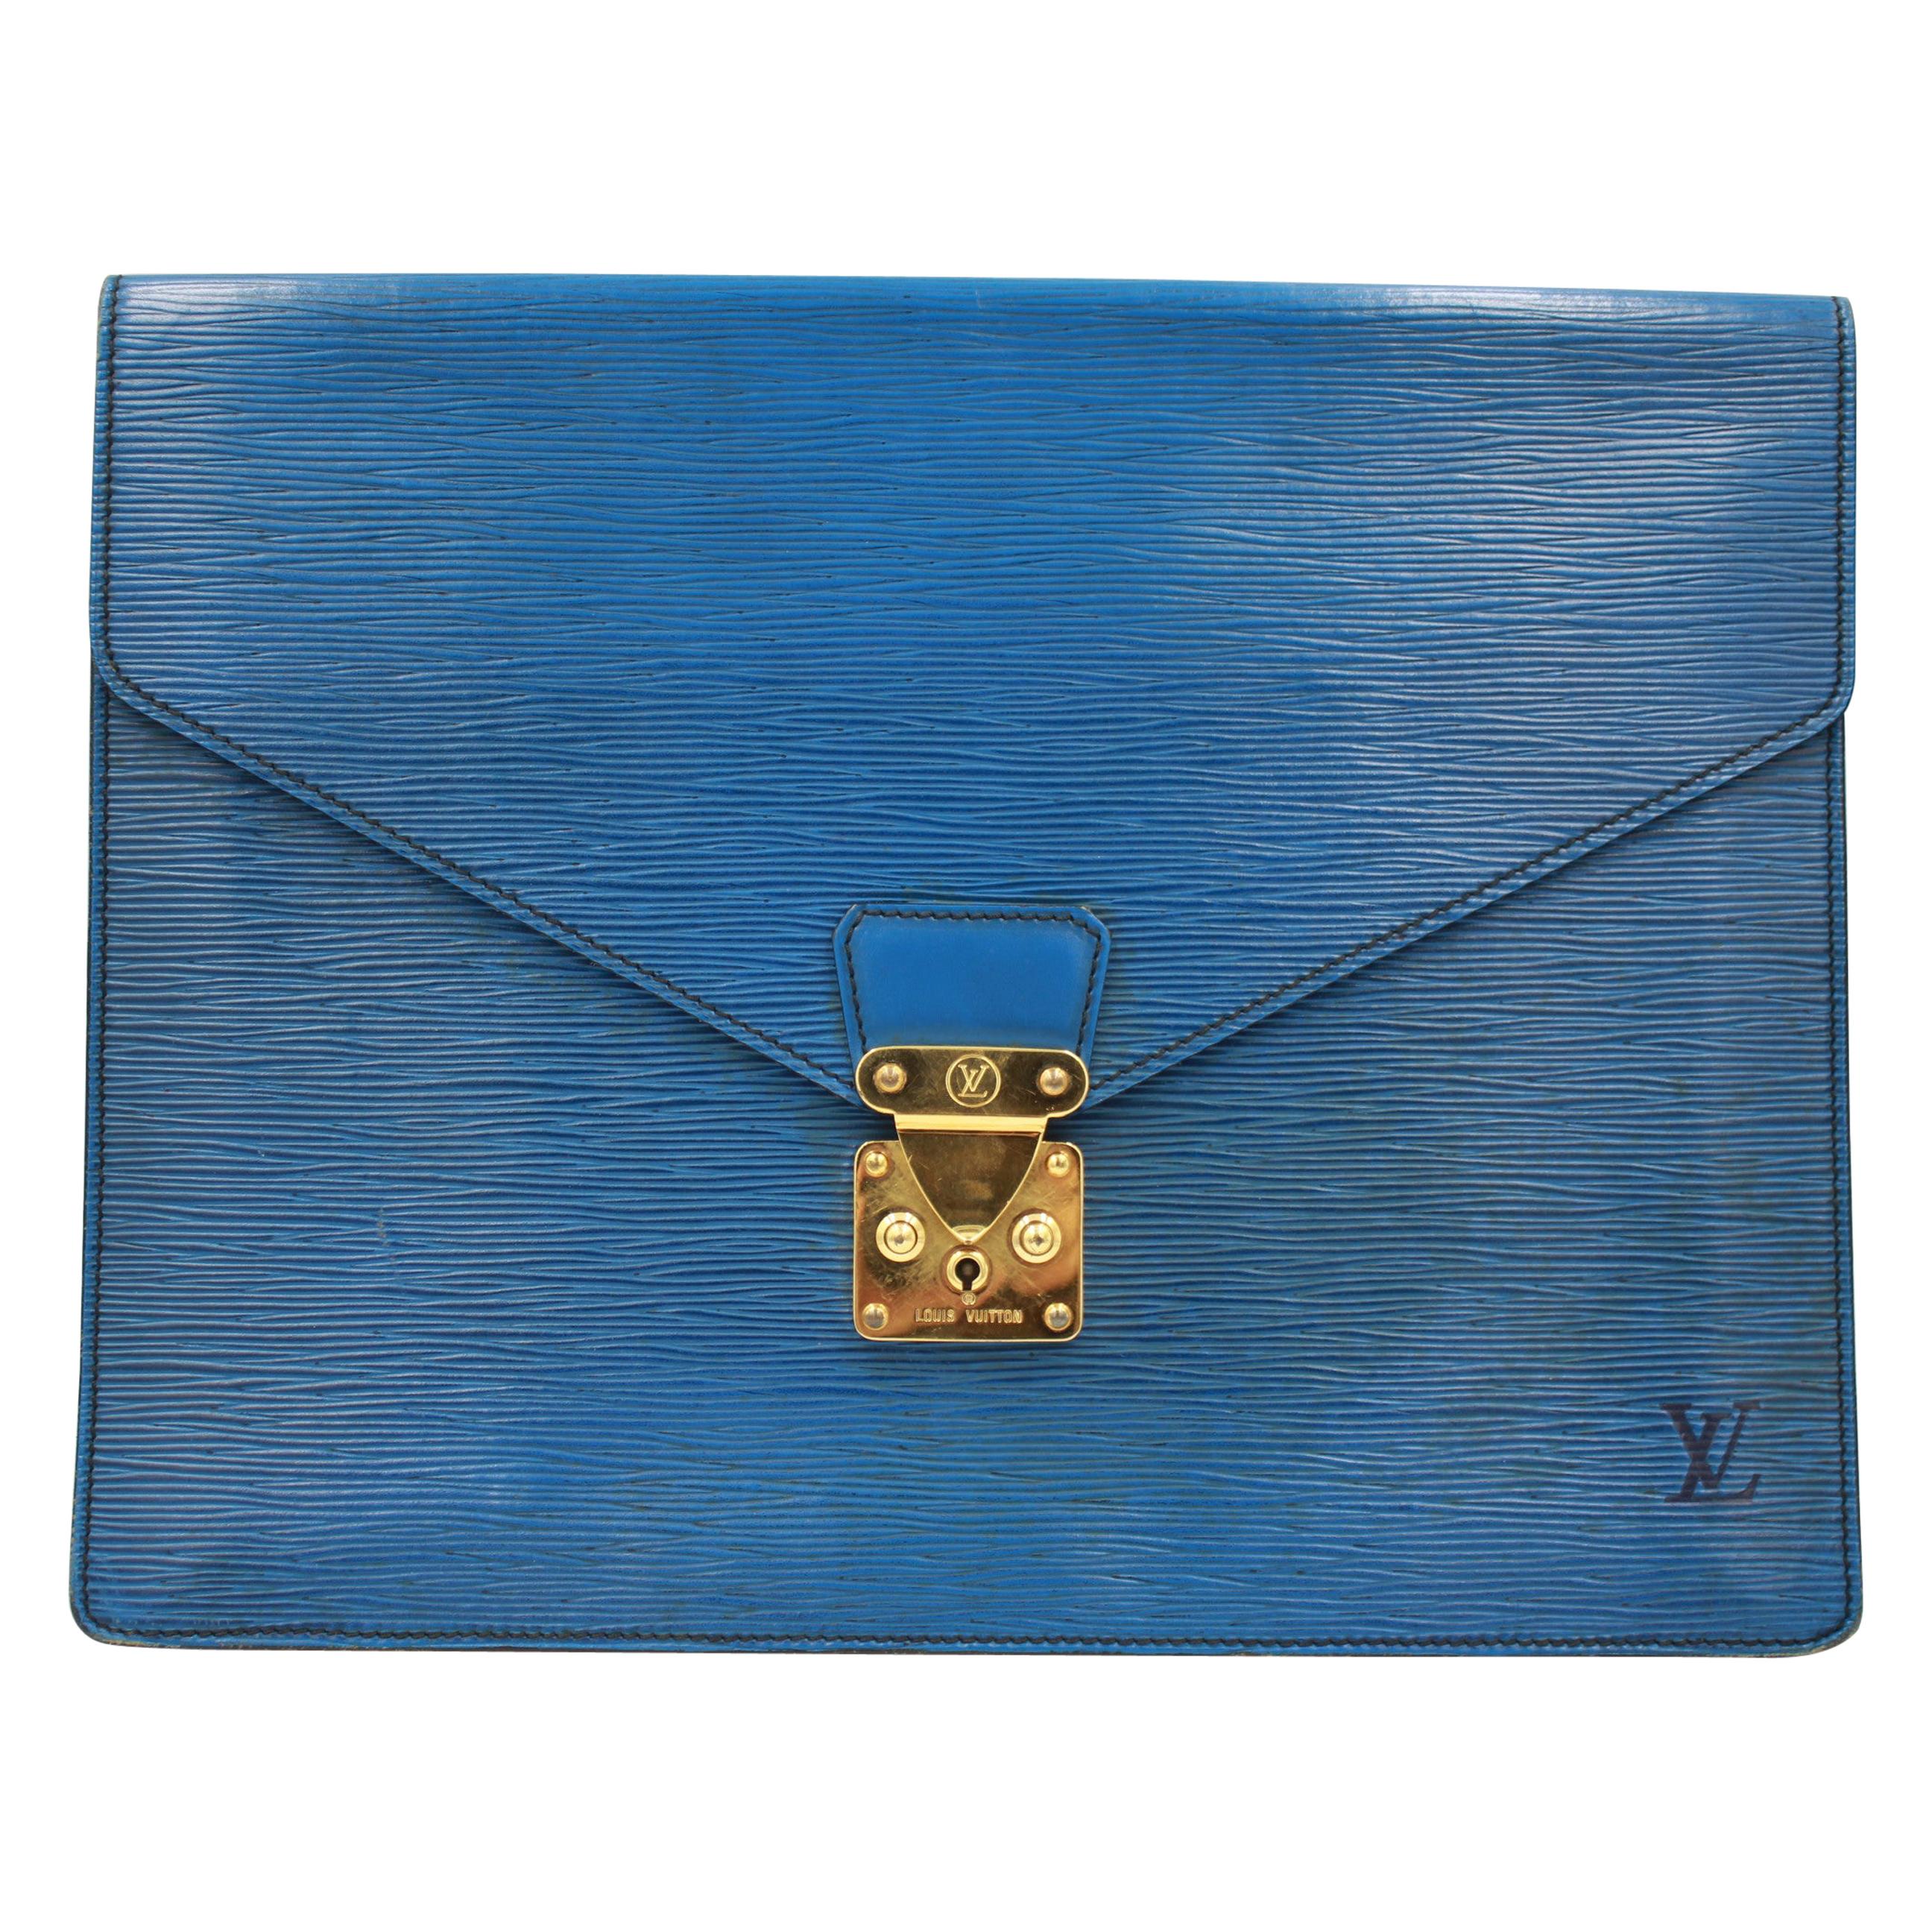 Louis vuitton document pouch in blue épi leather For Sale